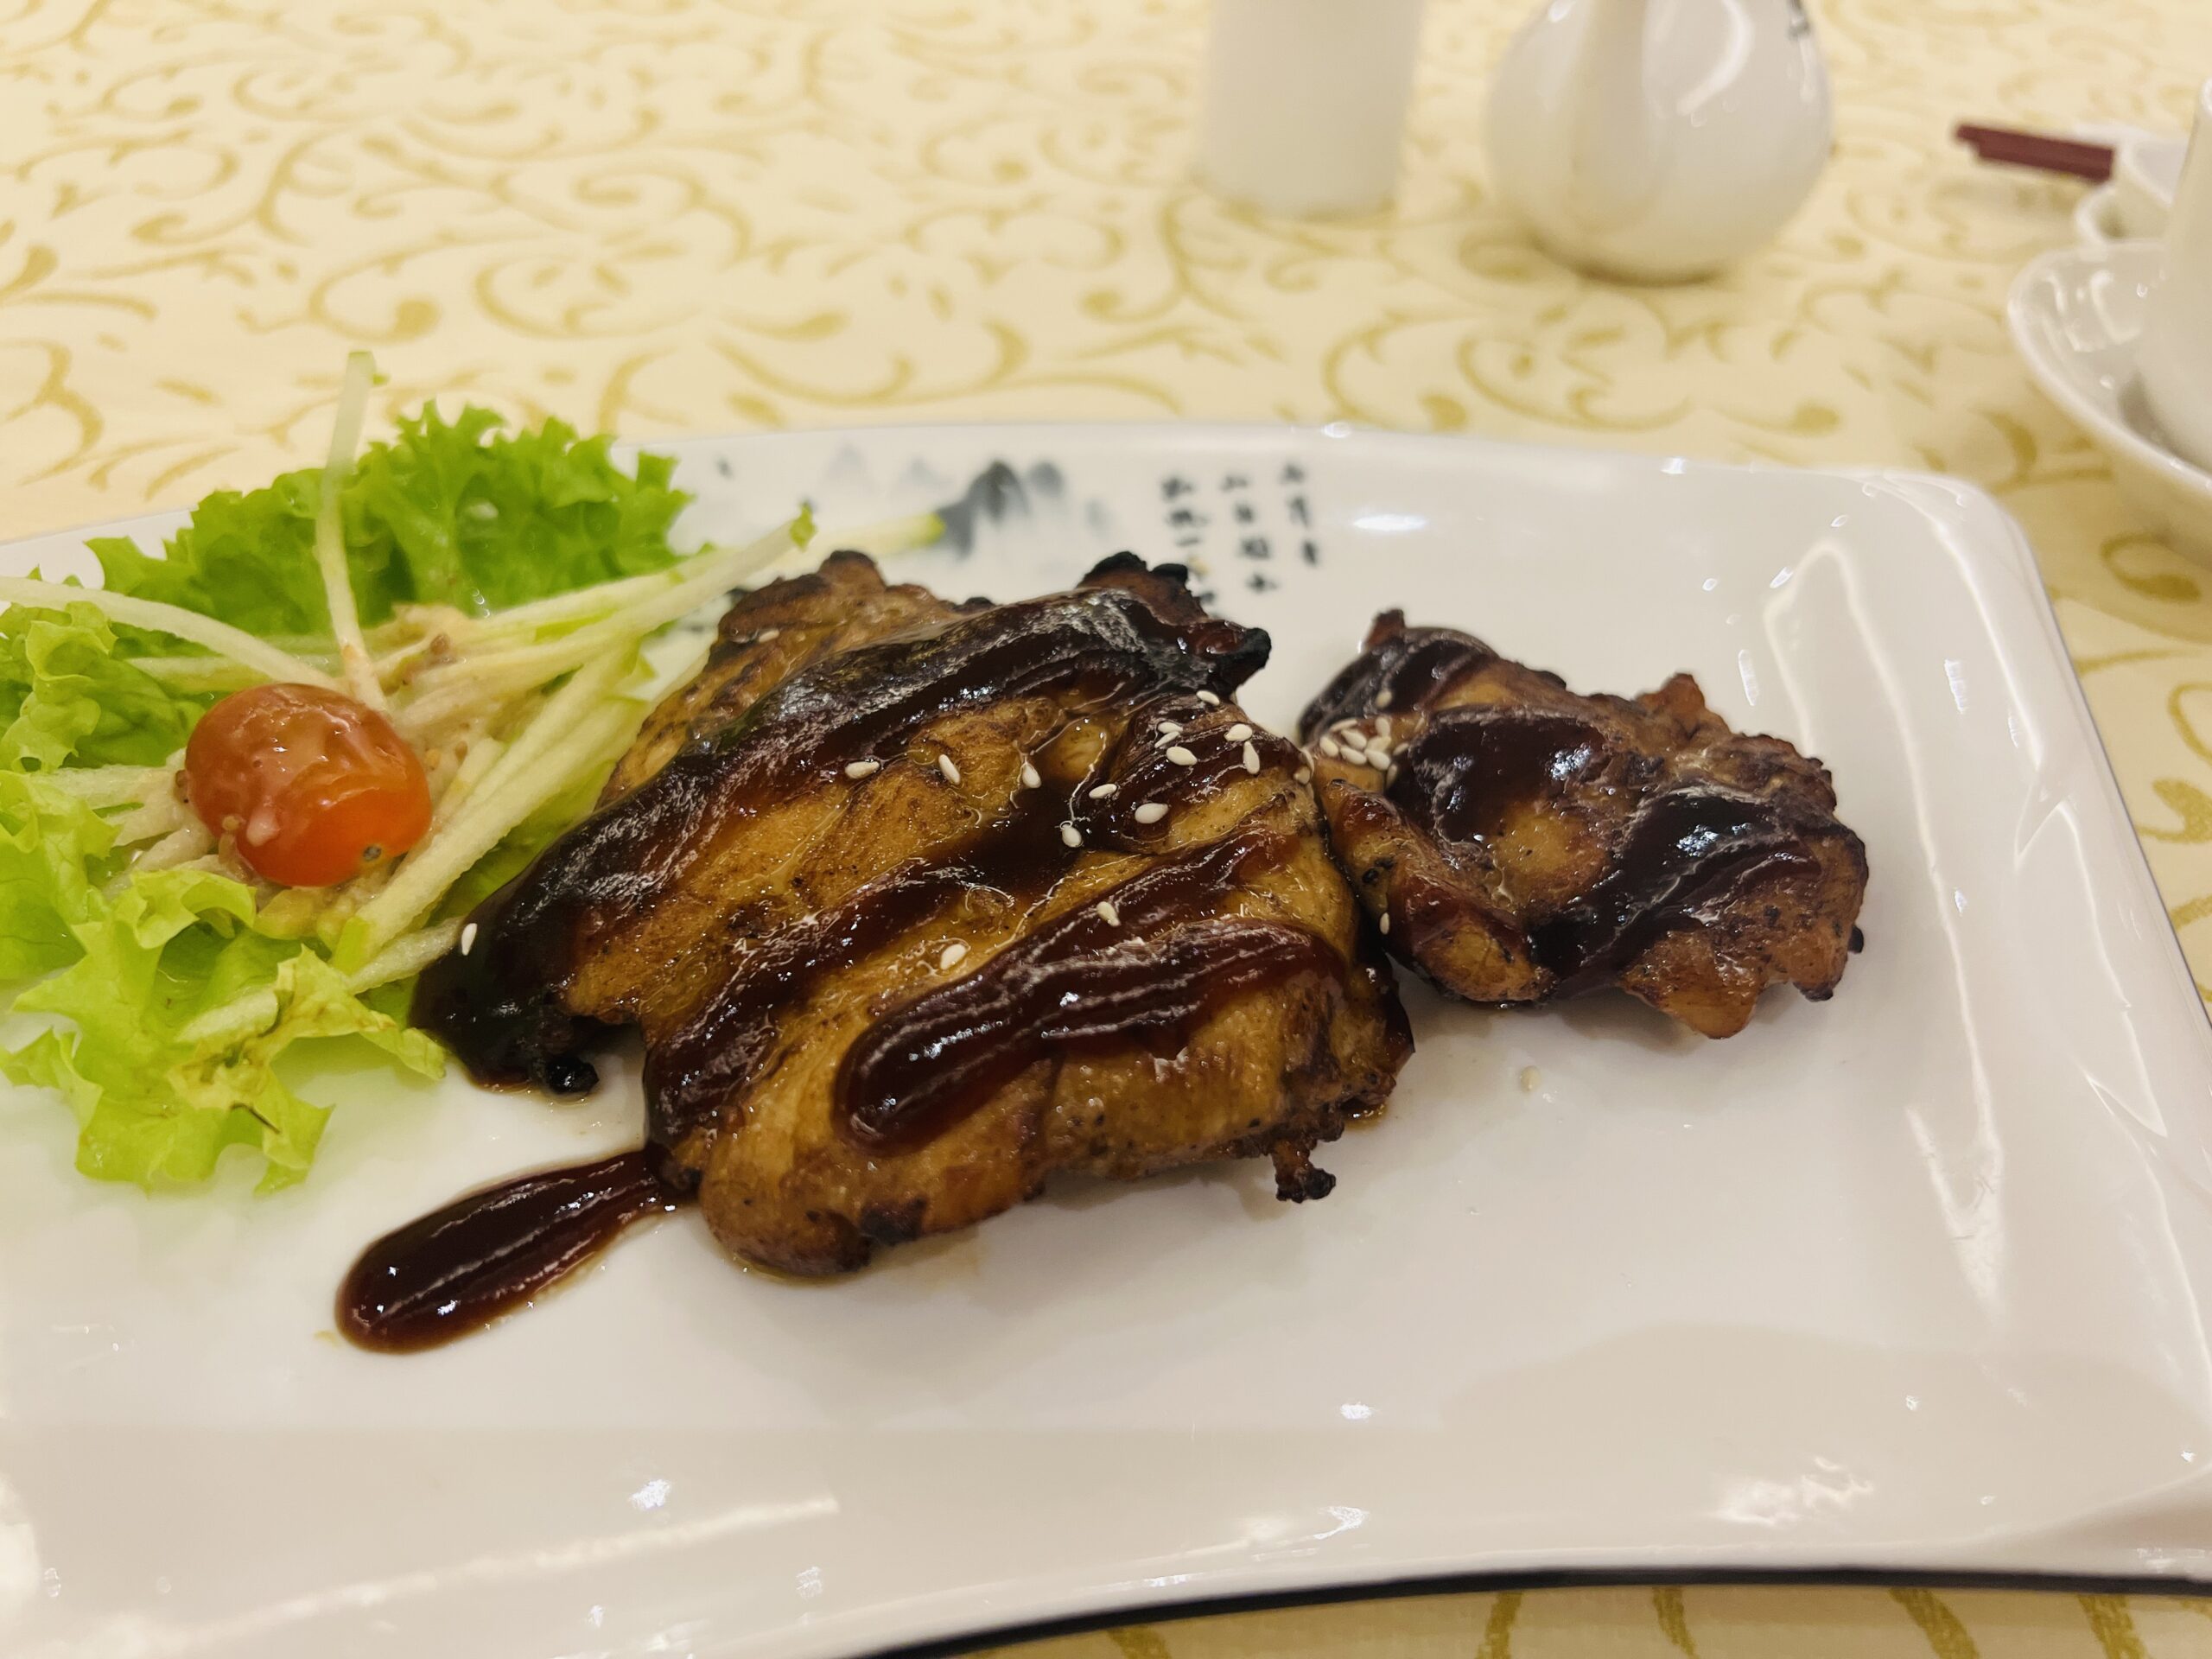 Imperial Restaurant - Chicken Chop Glazd in emongrass & Black Pepper Sauce